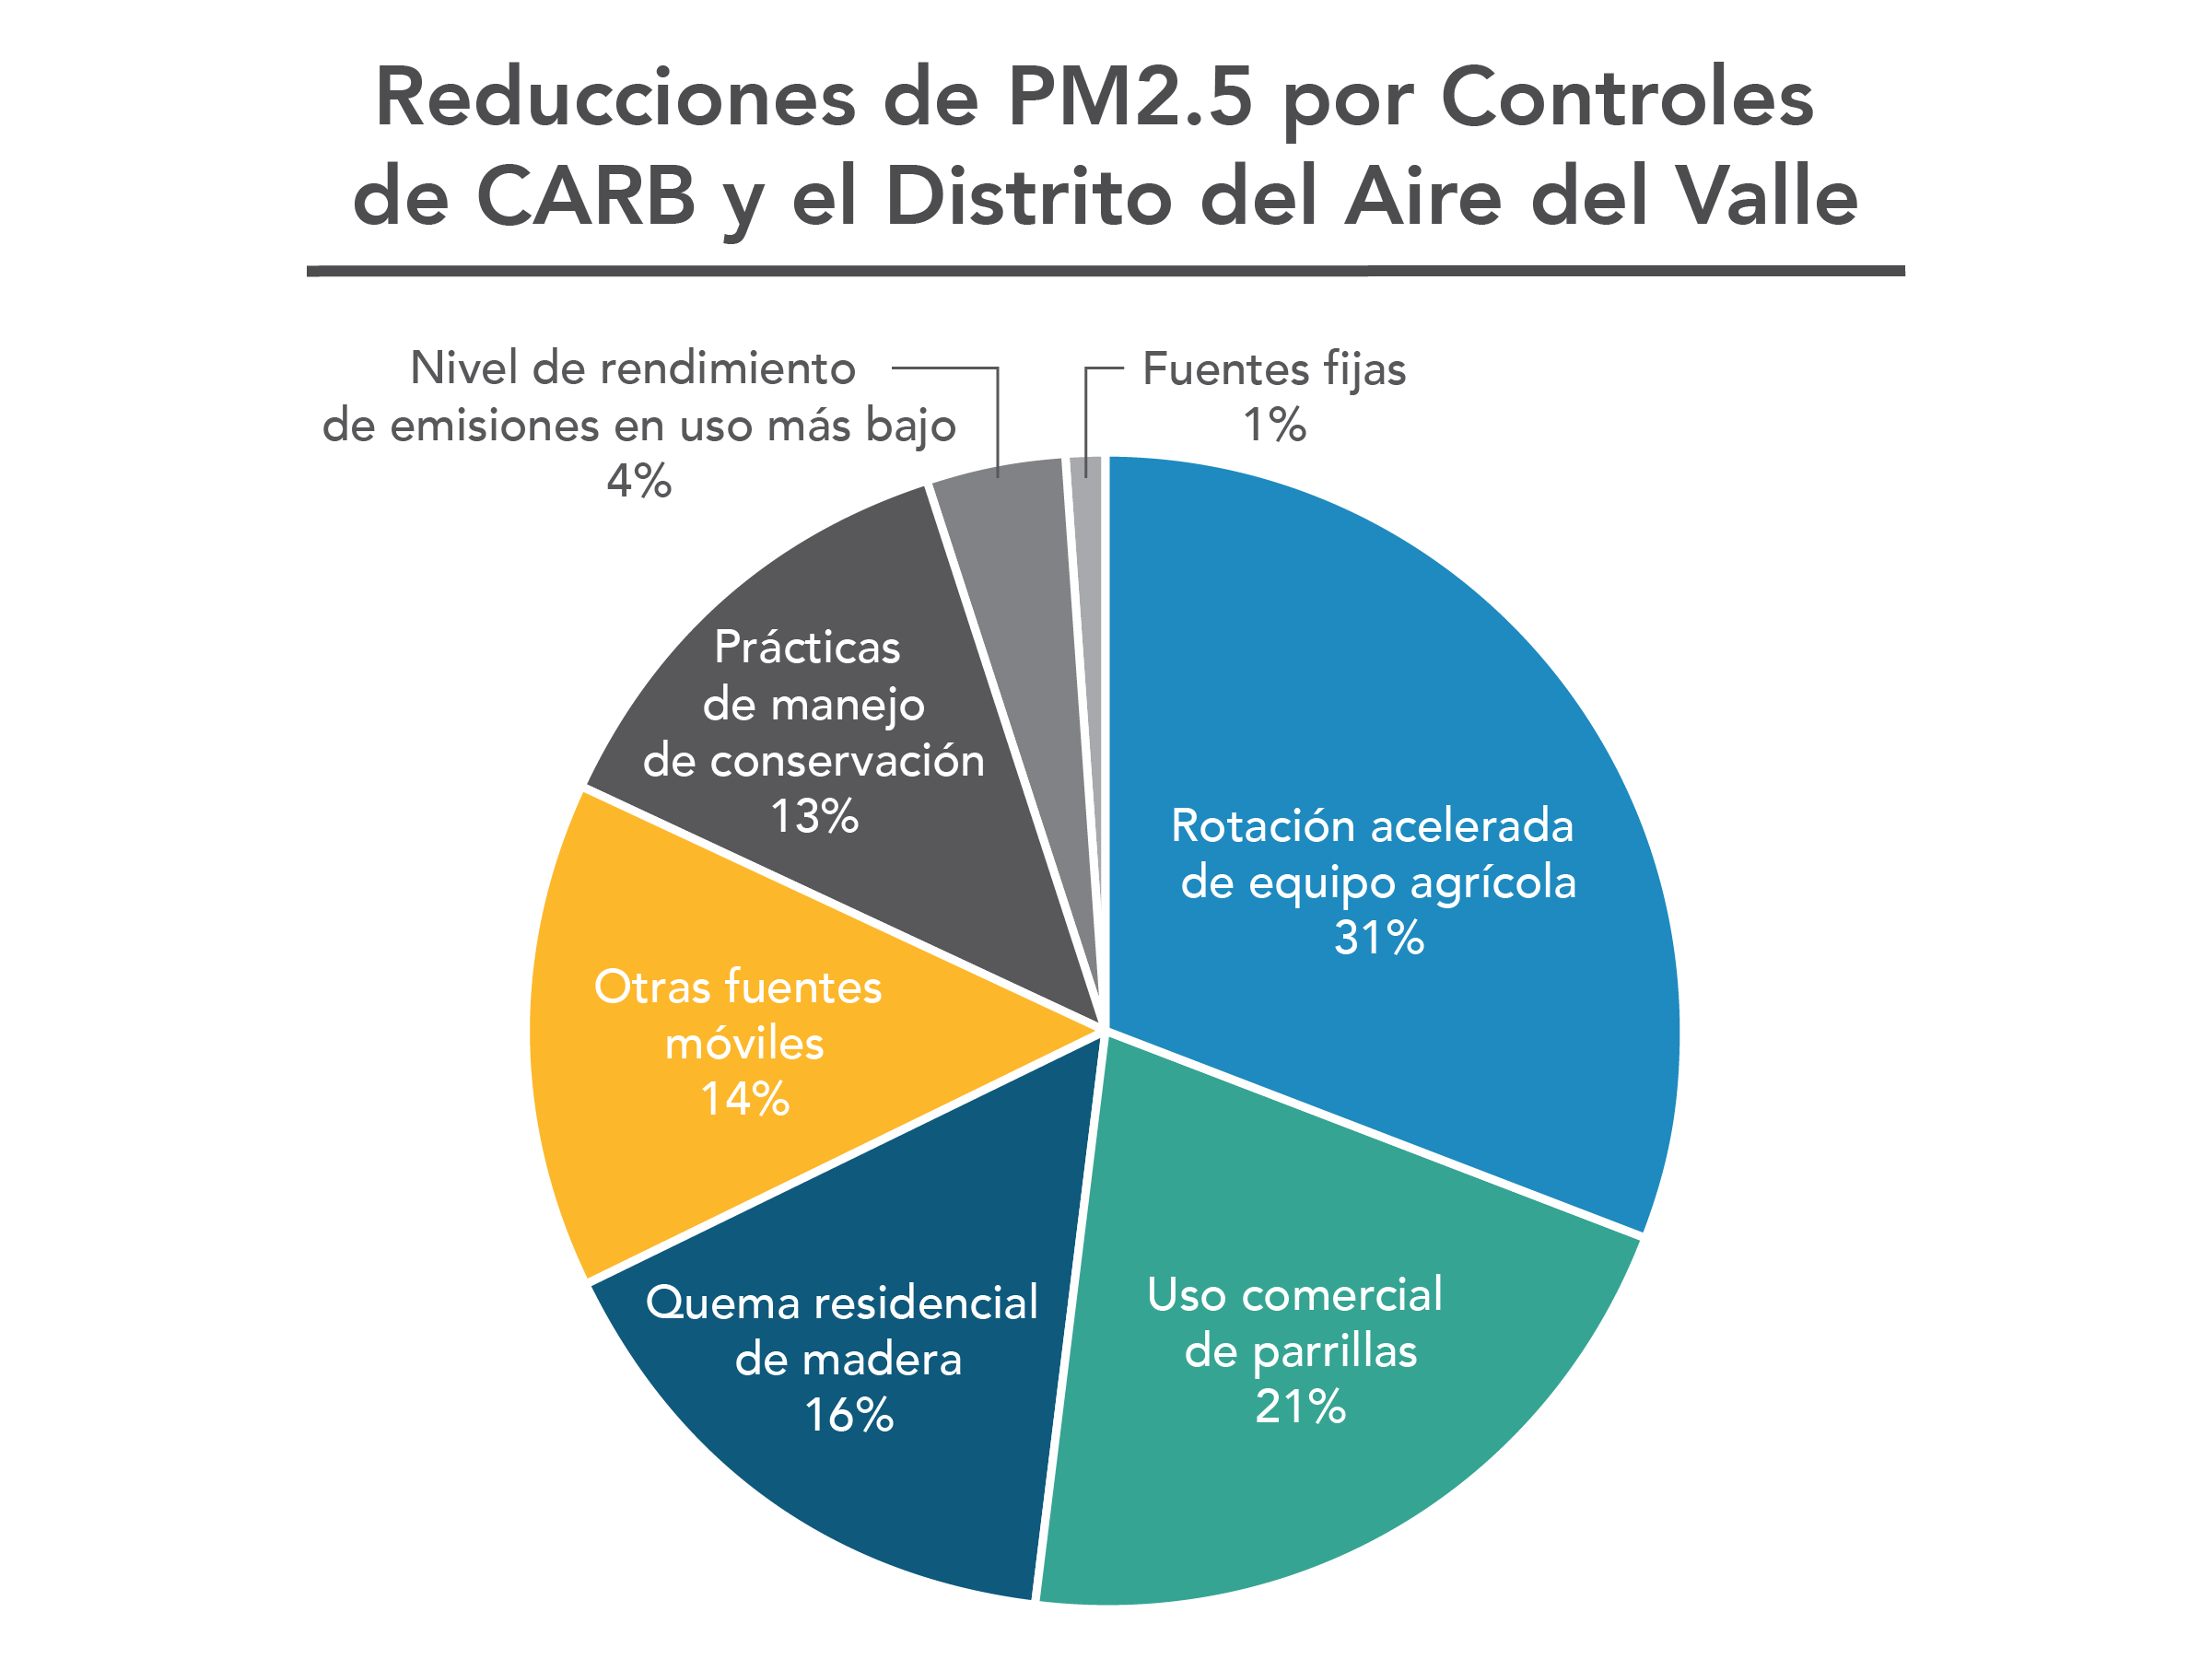 Reducciones de PM2.5 por controles de CARB y el Distrito del Aire del Valle